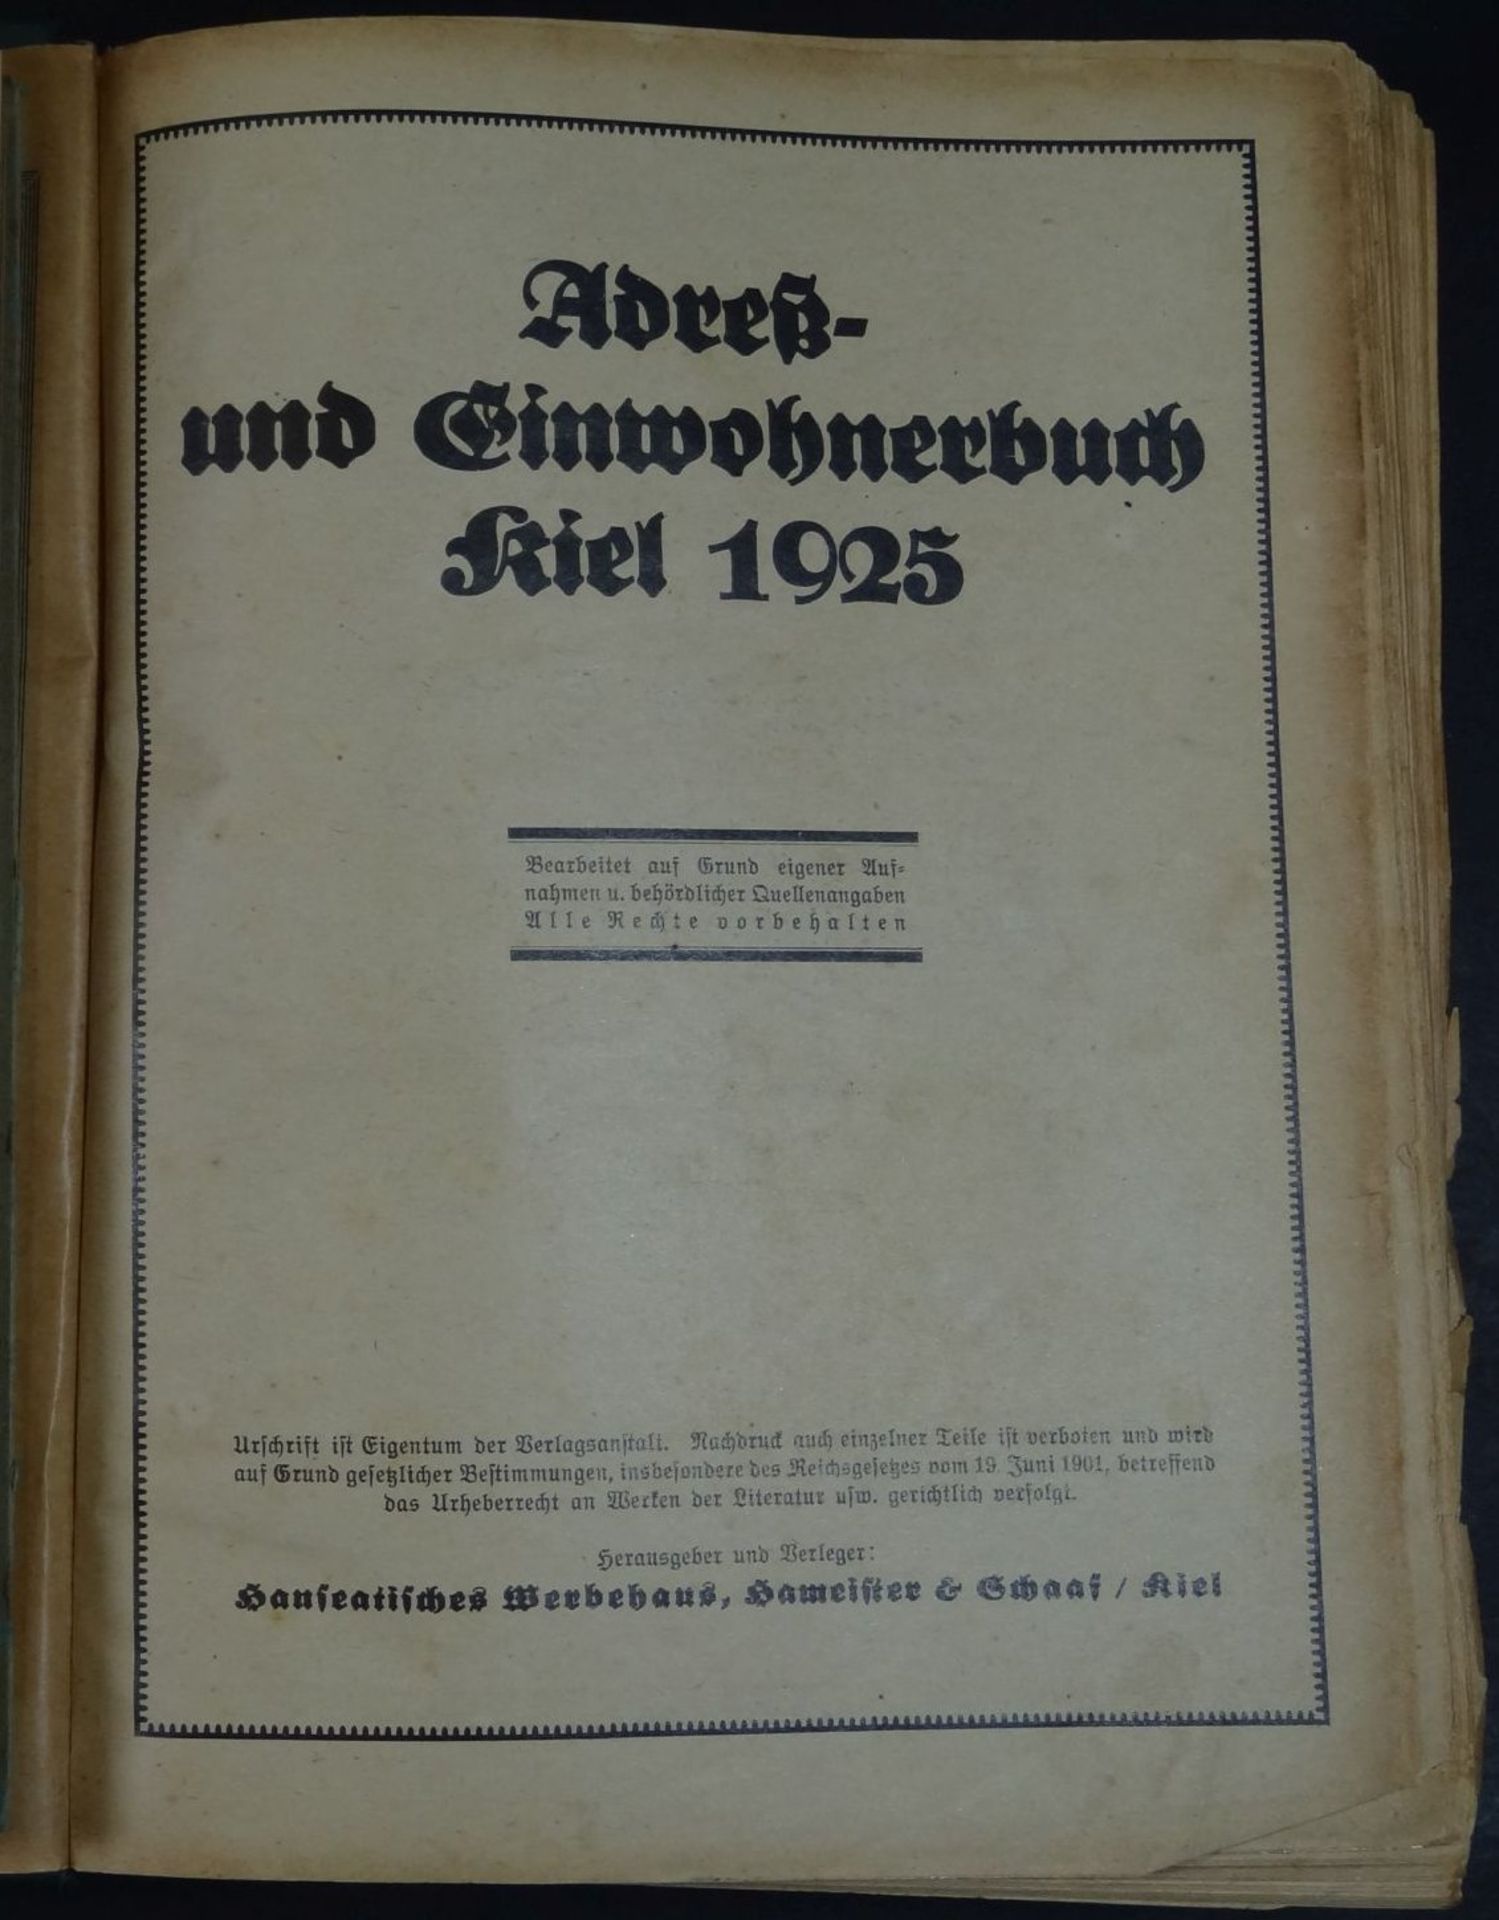 4x Kieler Adressbücher, 1925, 1930, 1940, 1966, Alters-u. Gebrauchsspure - Bild 2 aus 2